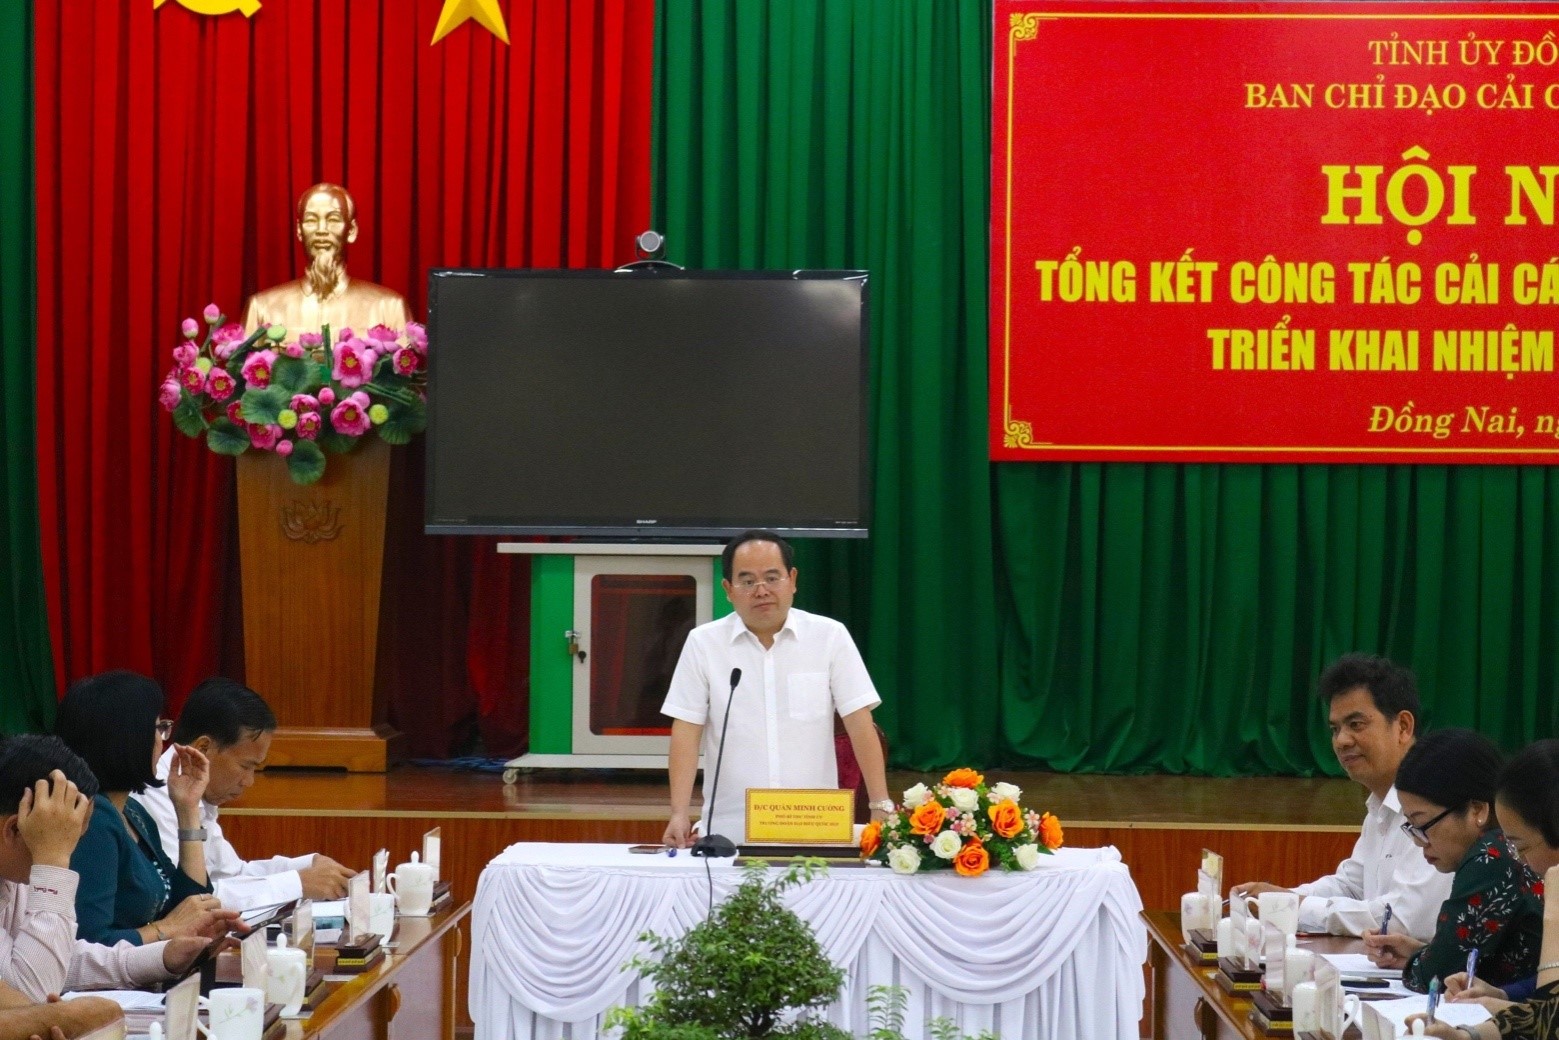 Đồng chí Quản Minh Cường, Phó Bí thư Tỉnh uỷ, Trưởng Ban Chỉ đạo Cải cách tư pháp tỉnh phát biểu kết luận Hội nghị